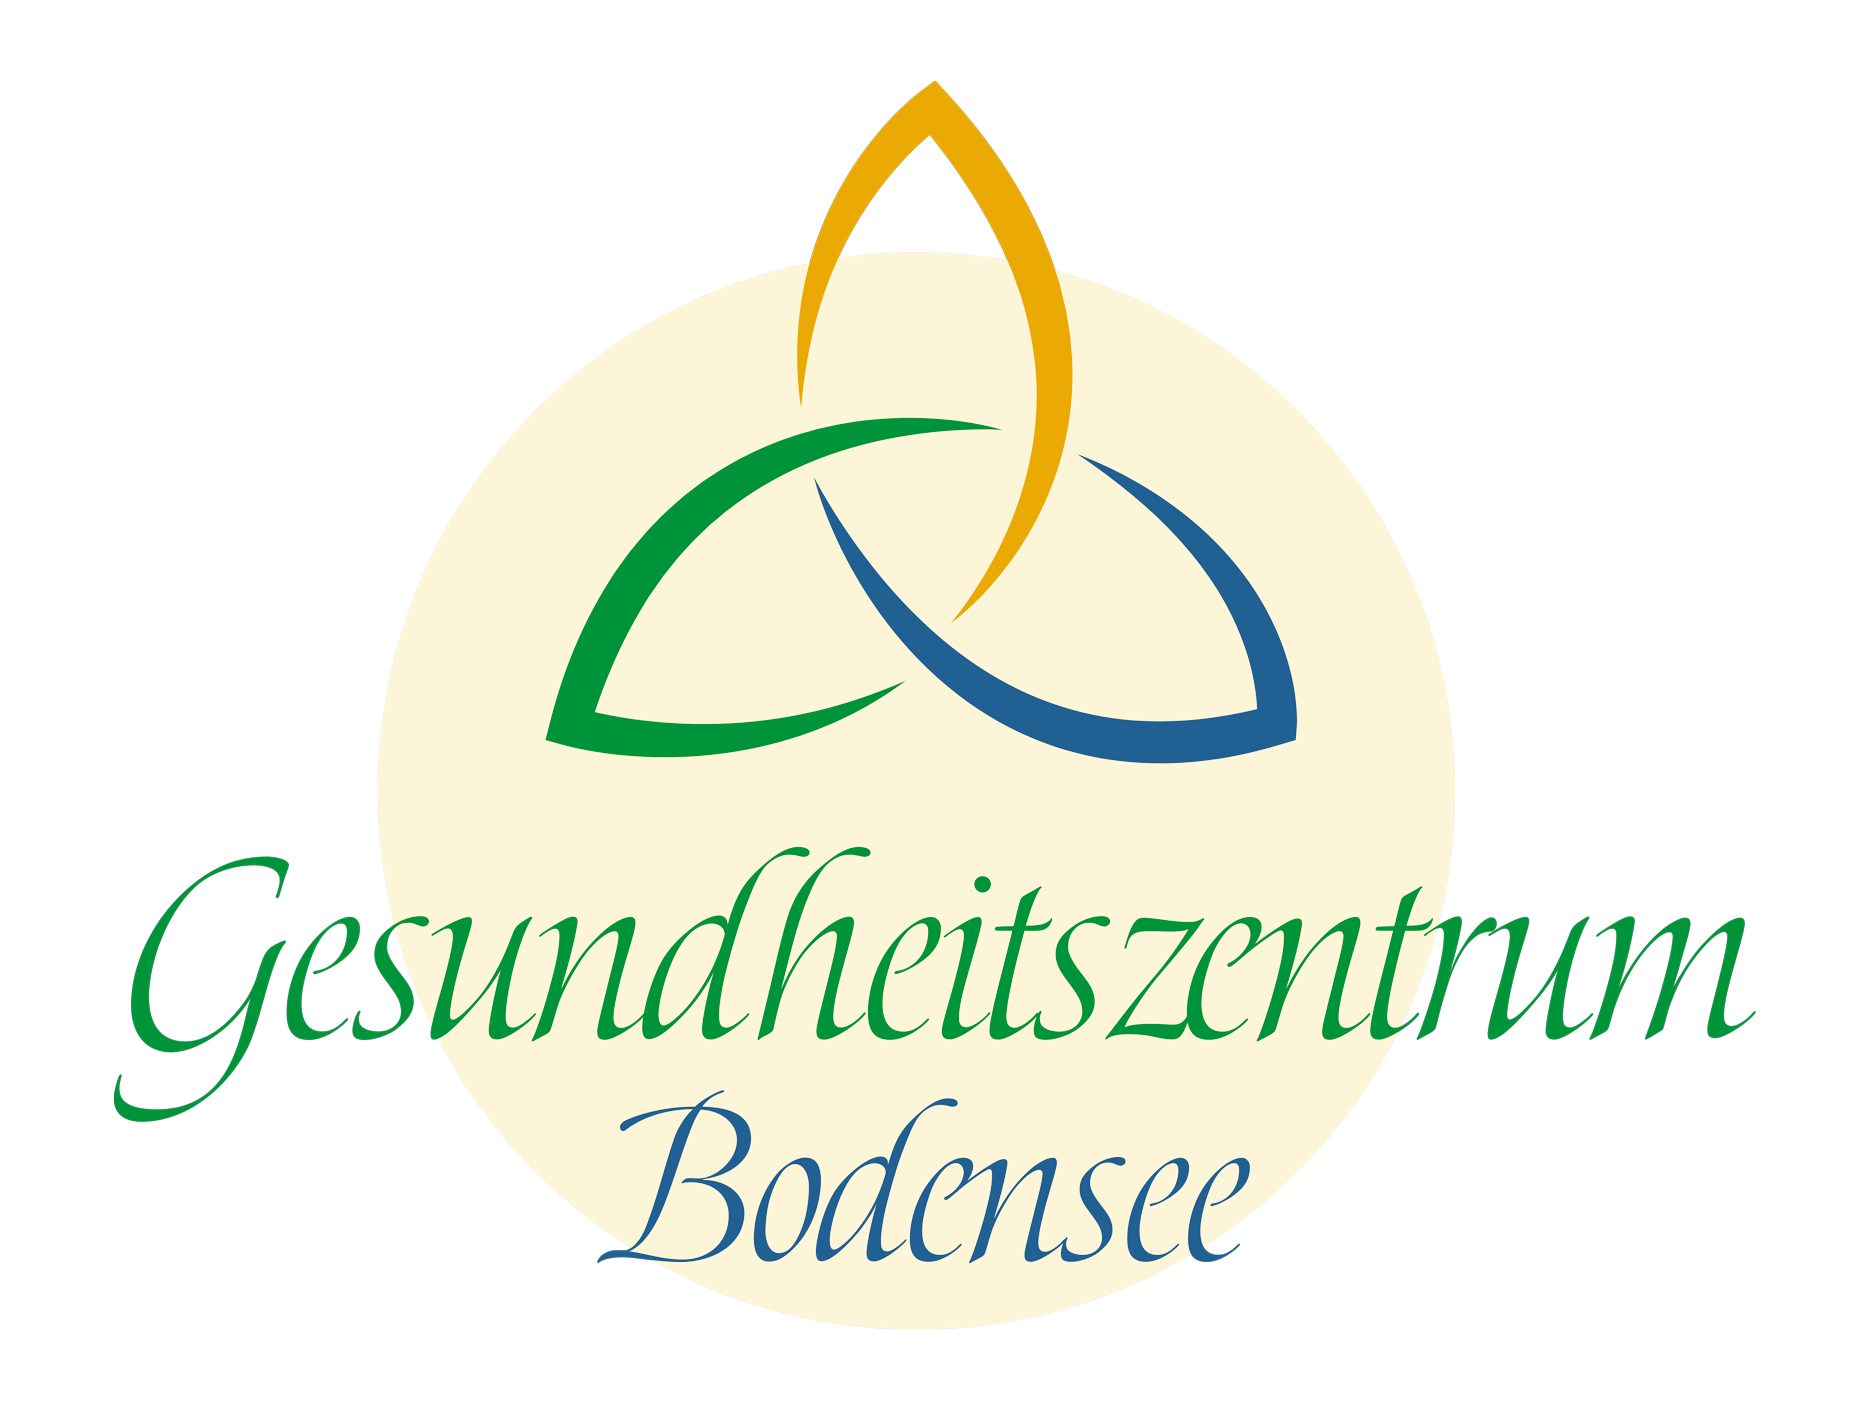 Gesundheitszentrum Bodensee